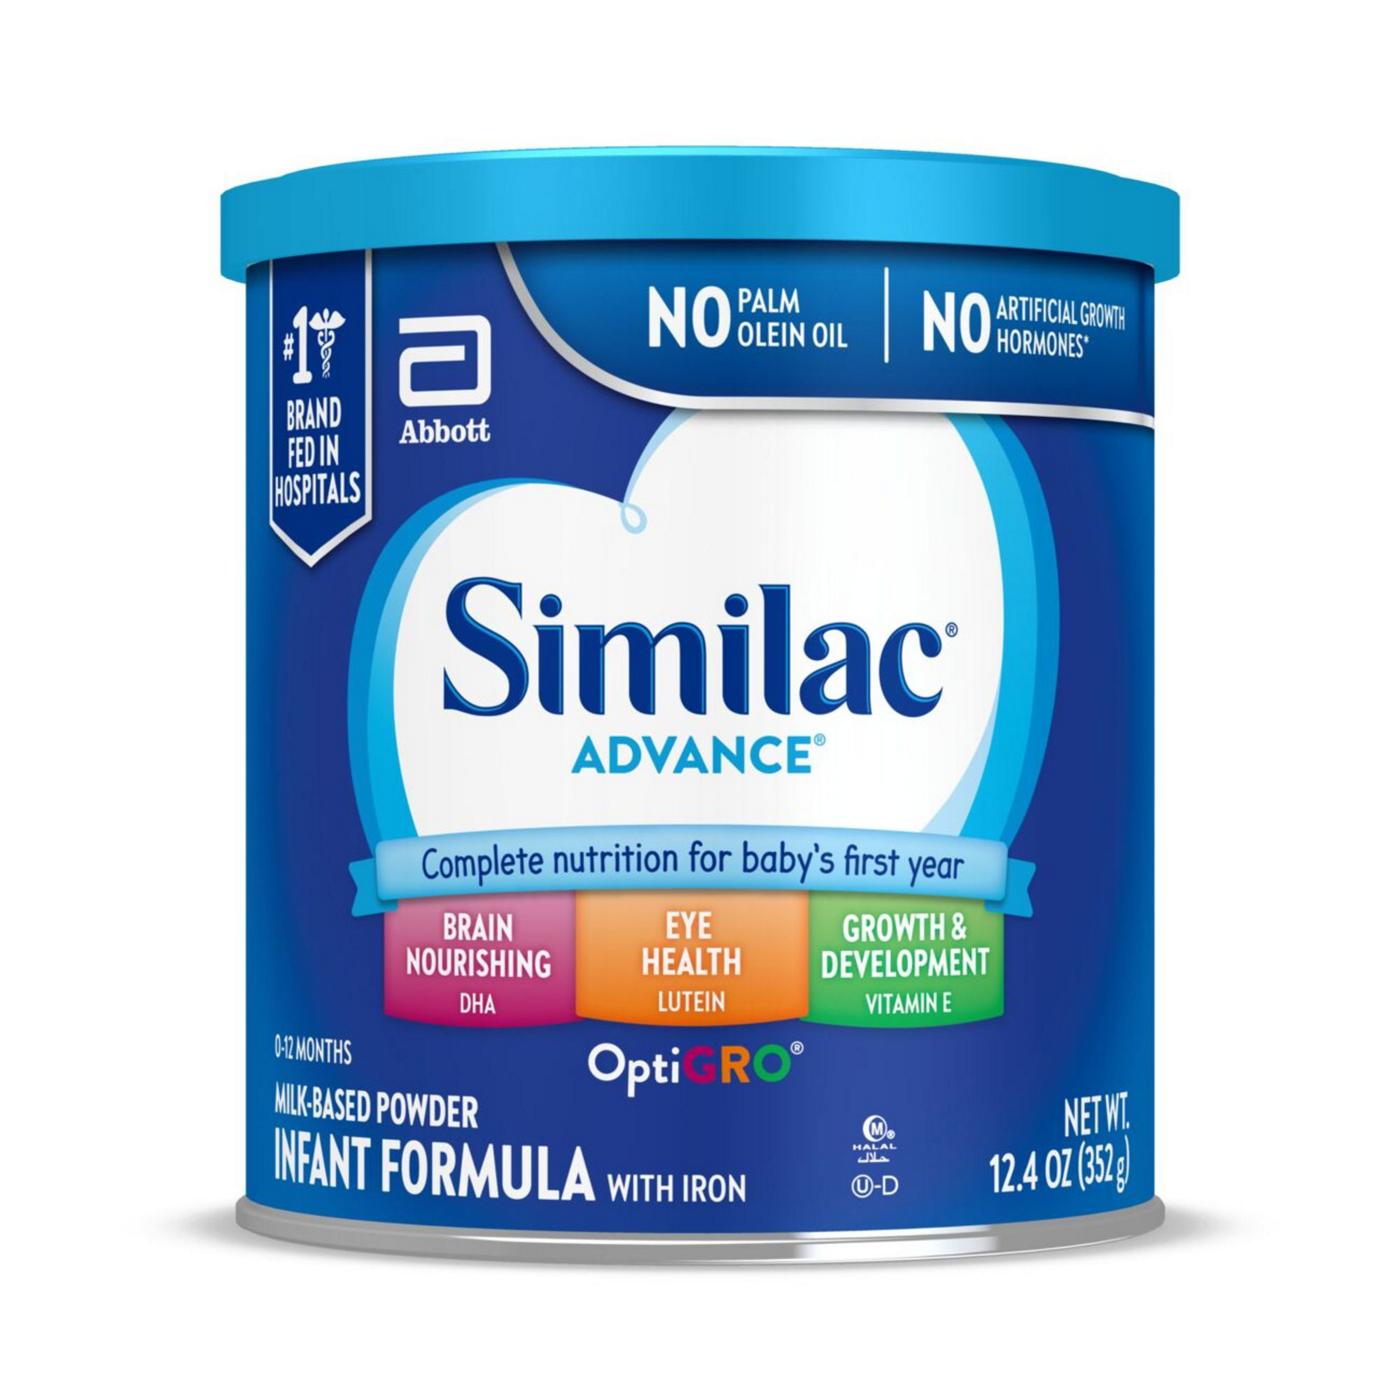 Similac Advance Milk-Based Powder Infant Formula with Iron; image 1 of 10